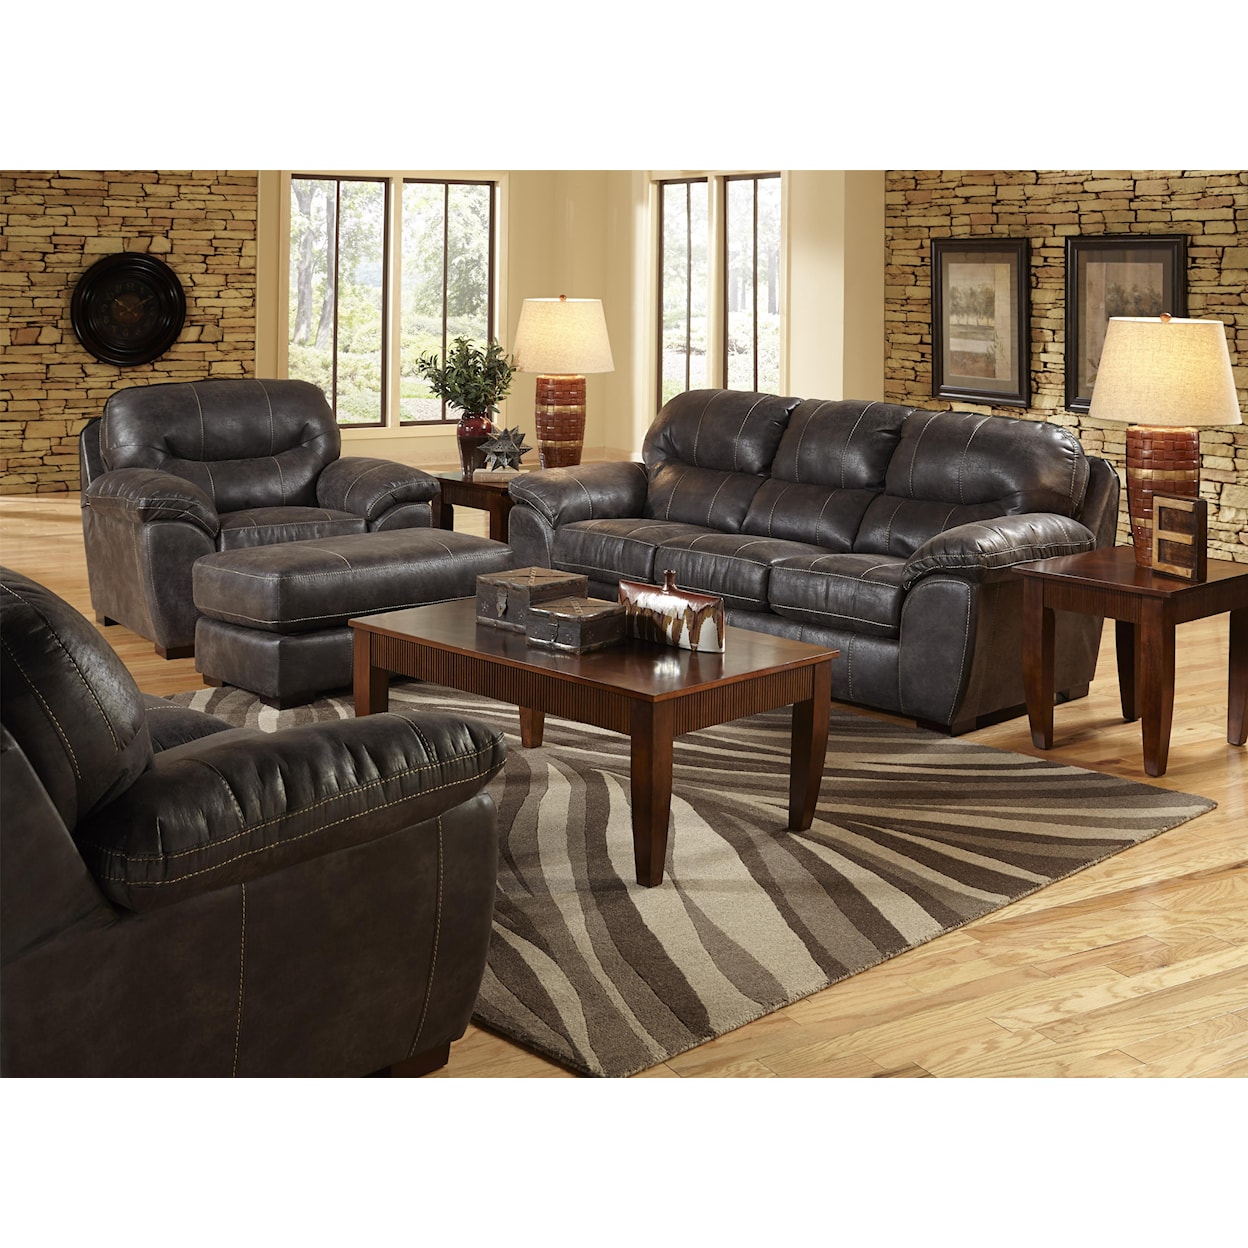 Carolina Furniture 4453 Grant Sofa